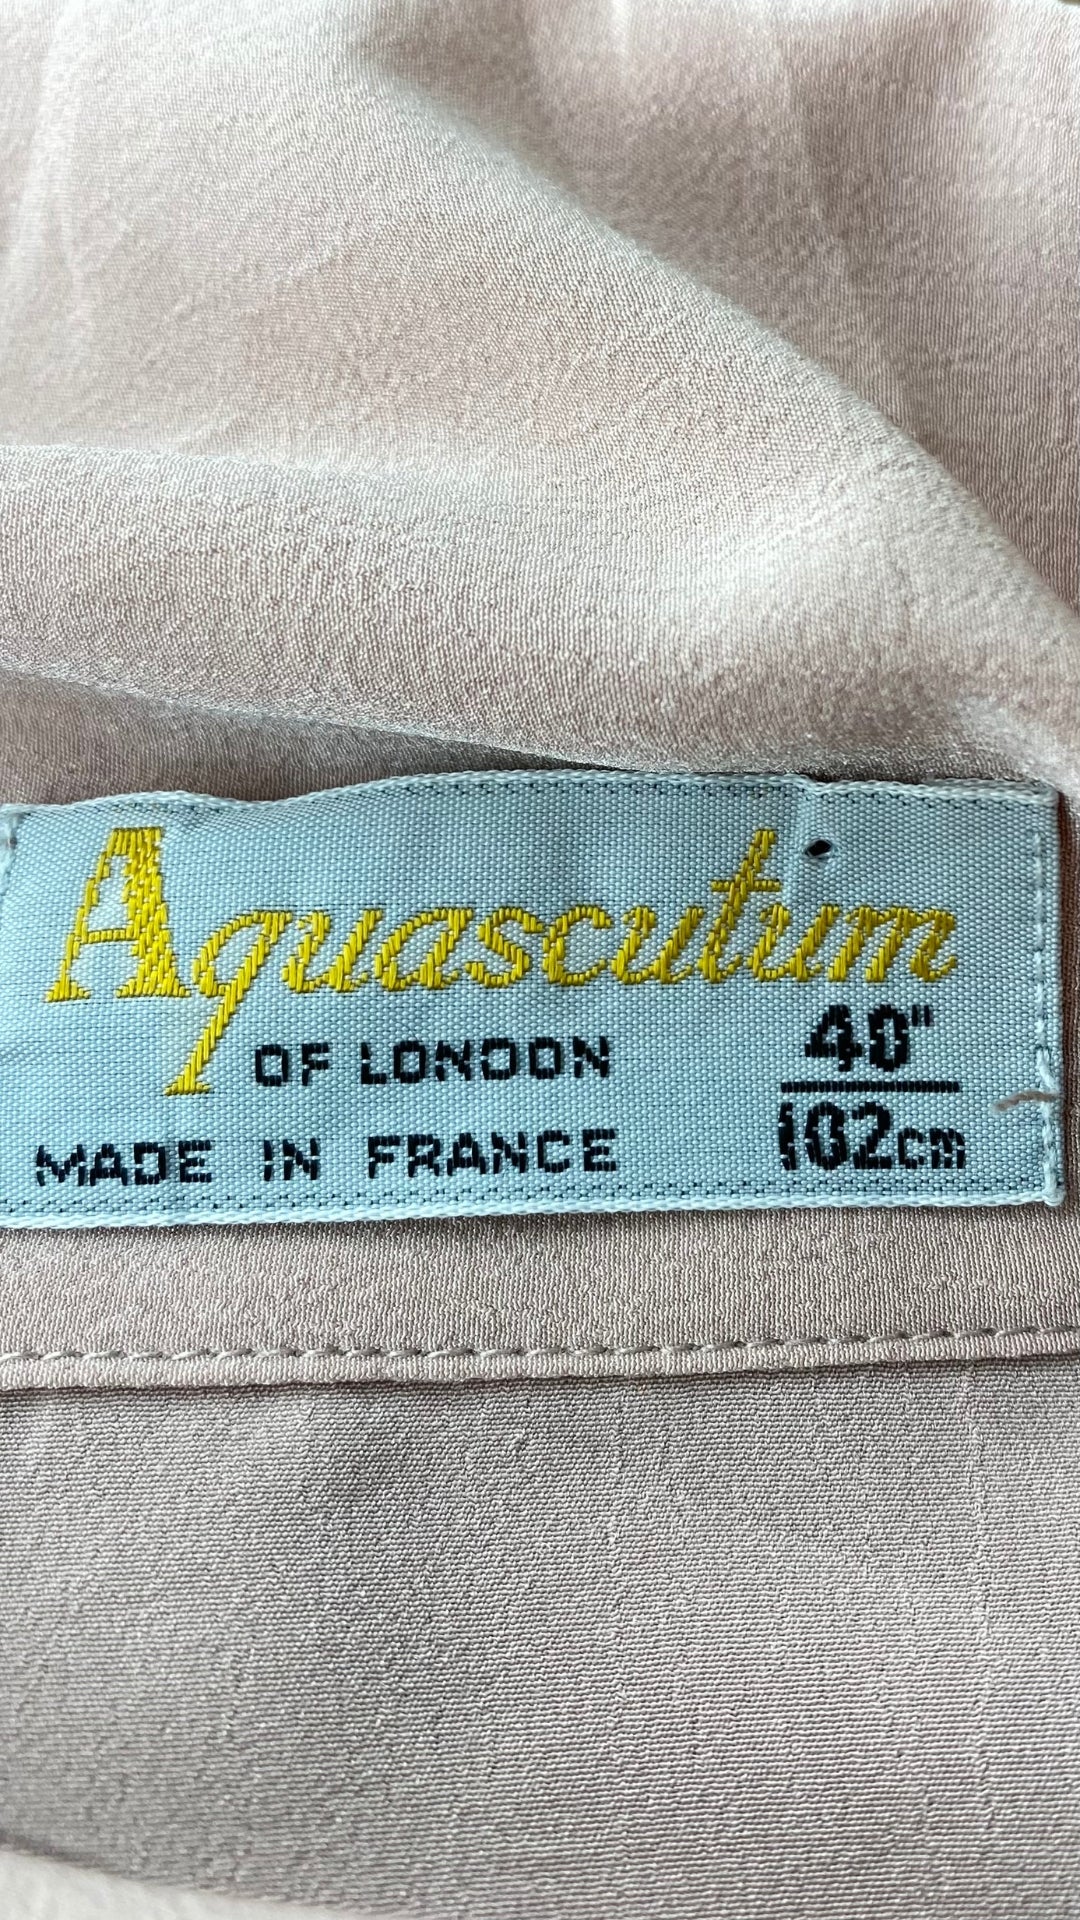 Chemisier vintage fluide vieux-rose col lavallière Aquascutum, taille estimée medium-large. Vue de l'étiquette de la marque.